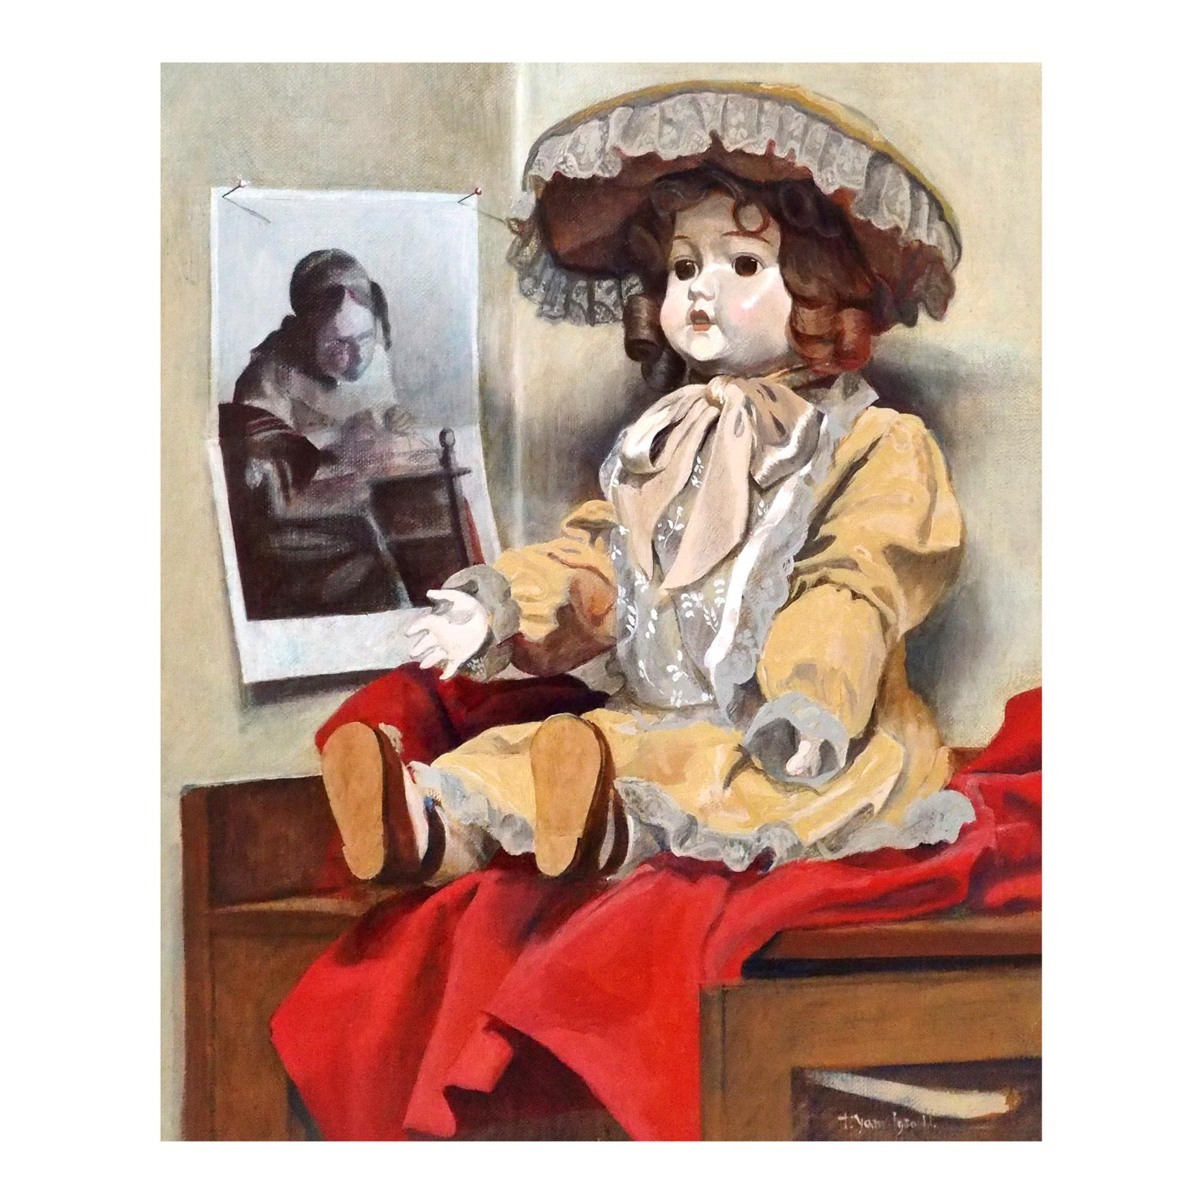 टोरू यामाशिता पश्चिमी गुड़िया / कैनवास पर तेल चित्रकला एक बोर्ड पर चिपकाई गई, नंबर 8 / 1980 में निर्मित / फ्रेंच गुड़िया / 2023 कला बाजार: 120, 000 येन / प्रामाणिकता की गारंटी / मंत्रमुग्ध, चित्रकारी, तैल चित्र, स्थिर जीवन पेंटिंग